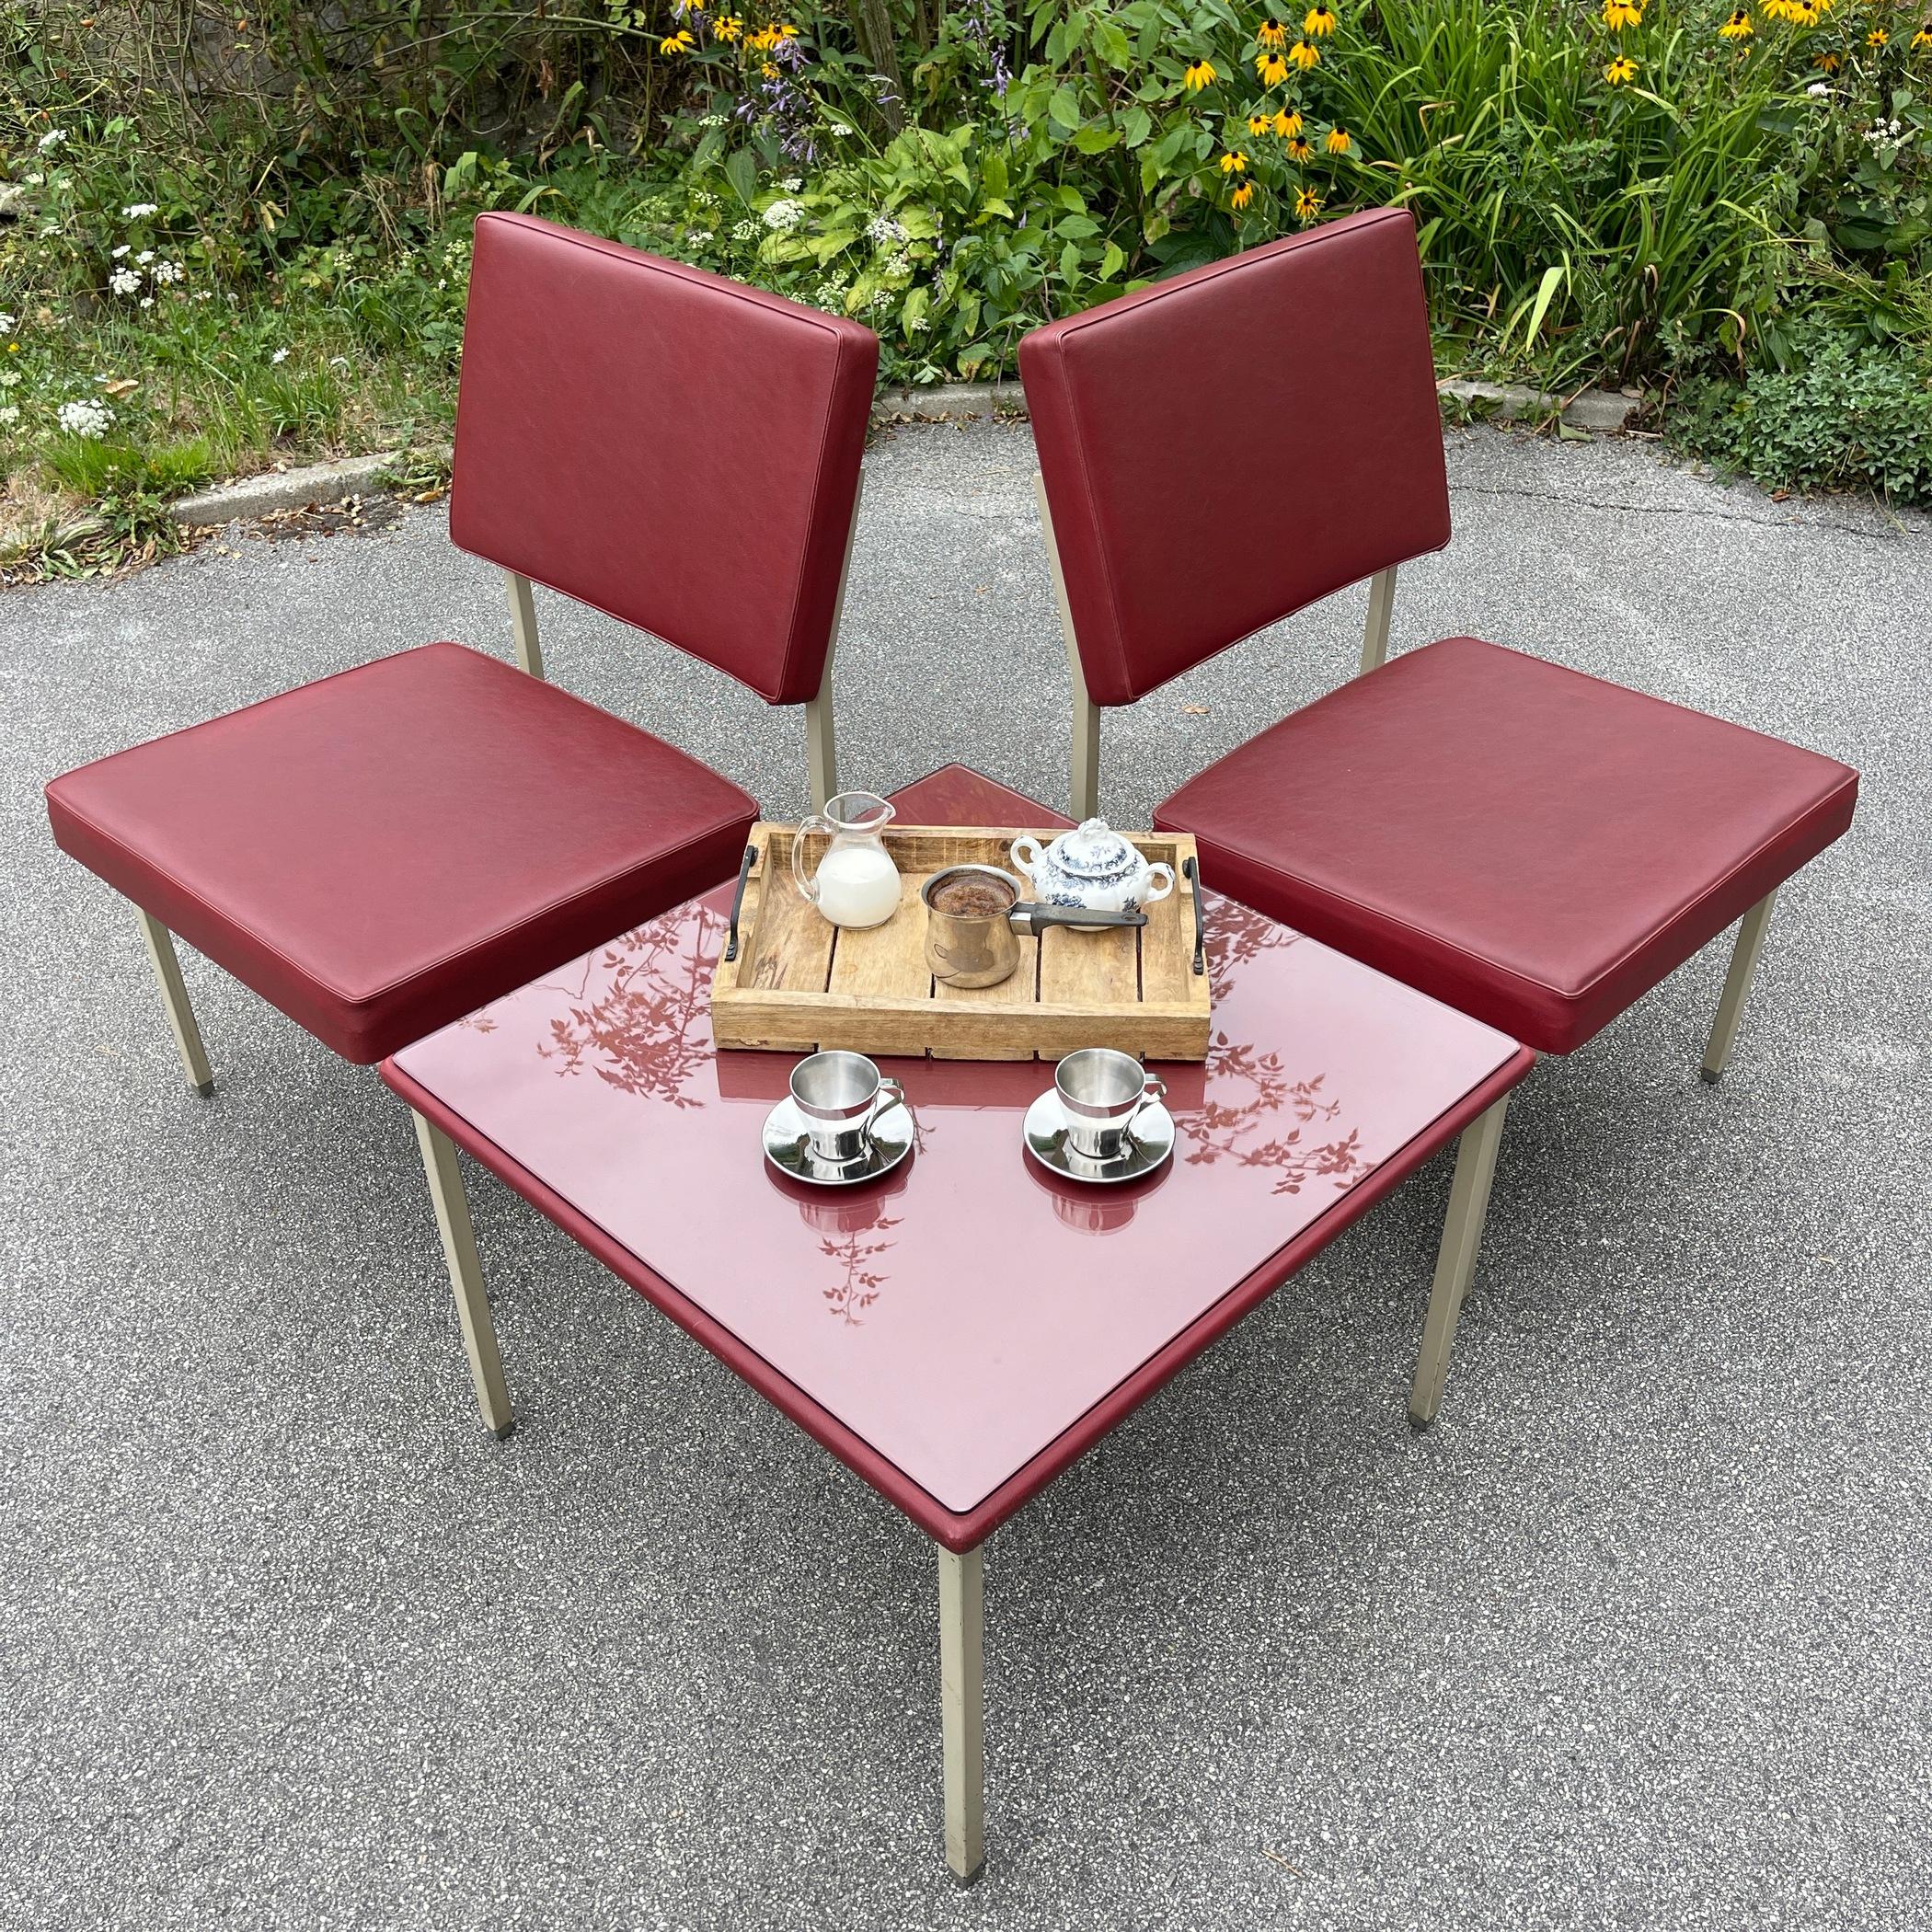 Rare ensemble de fauteuils et table basse vintage Anonima Castelli, fantastique structure métallique, avec similicuir d'origine.
Fabriqué en Italie dans les années 1950.
Excellent état vintage. Tous les articles portent l'étiquette Anonima